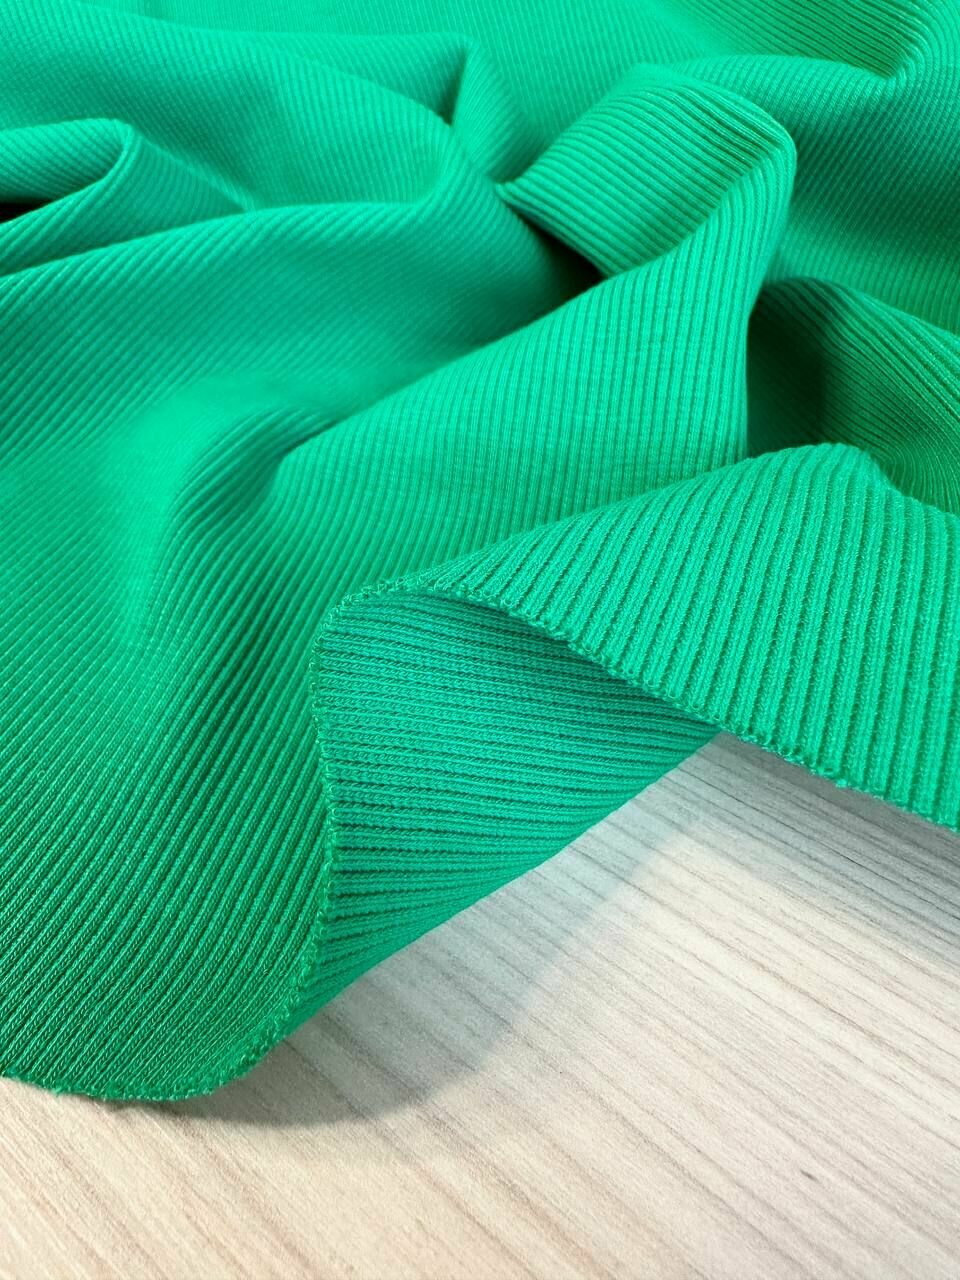 1м Кашкорсе трикотаж к футеру ткань для шитья подвяз, манжет, шапок и одежды. Зеленый. Отрез 100*110 см.